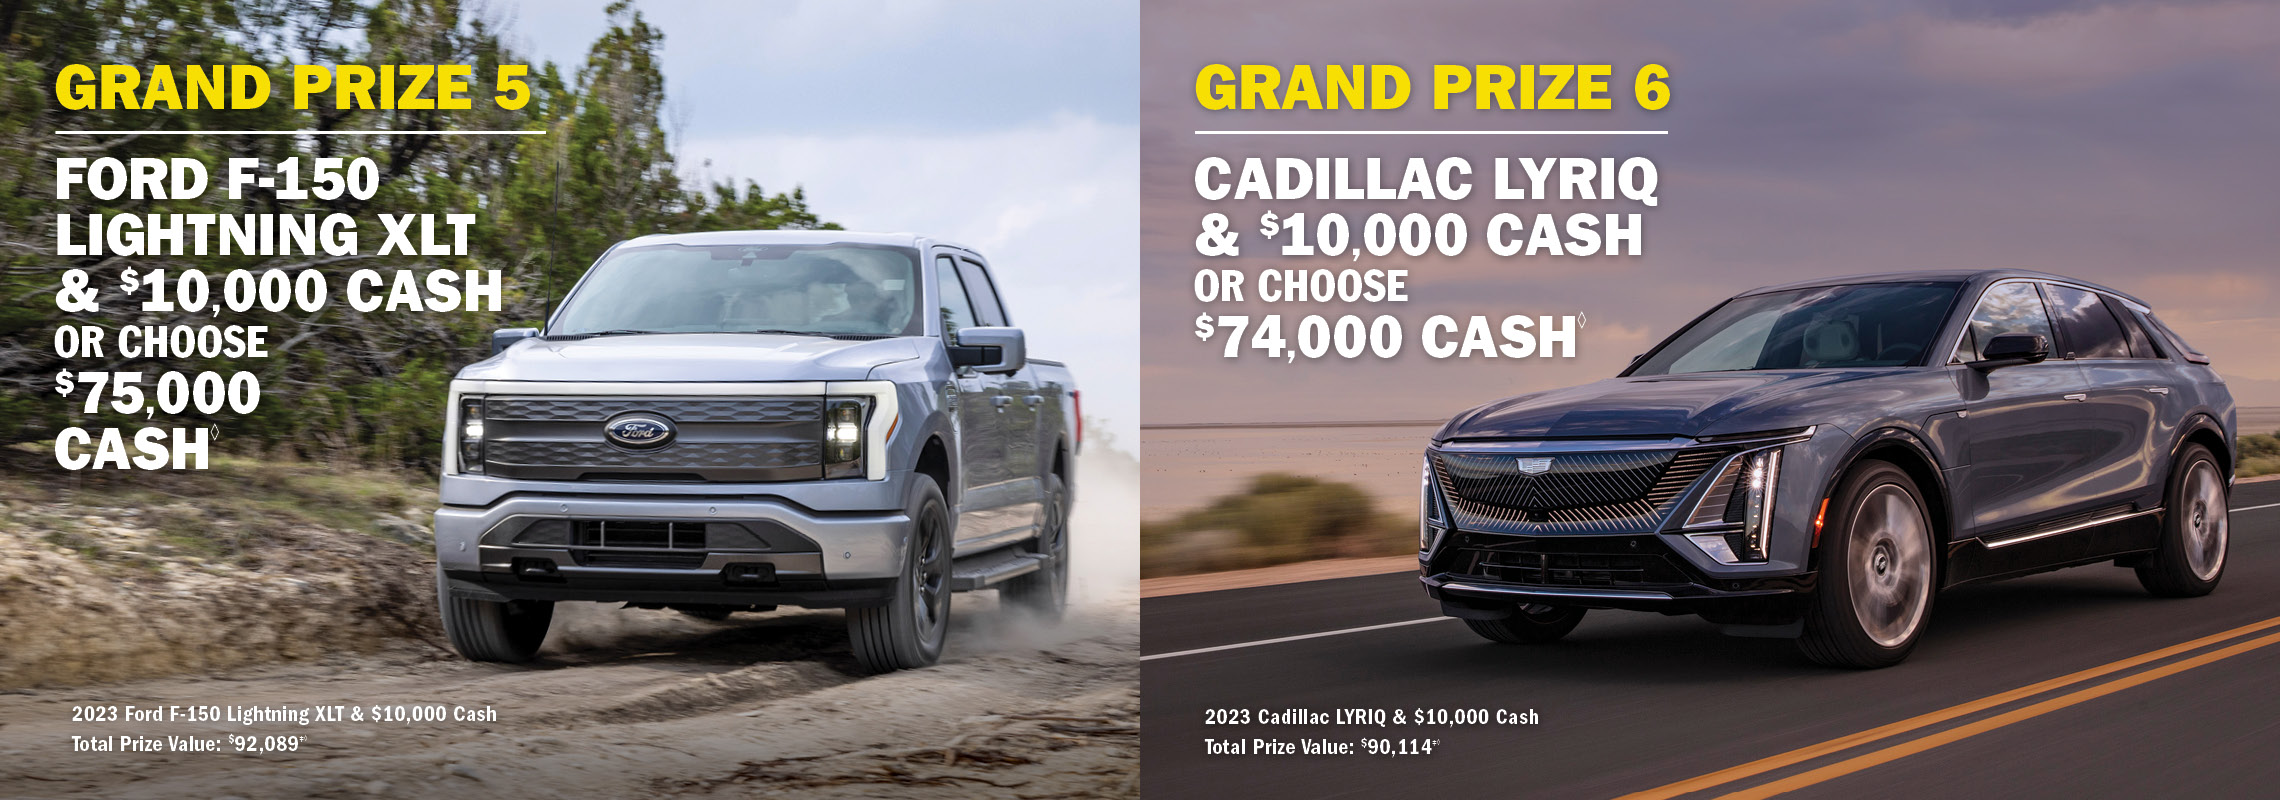 Grand Prize 5 Ford F-150 Lightning XLT & $10,000 cash OR choose $75,000 cash. Grand Prize 6 - Cadillac Lyriq & 10,000 Cash OR choose $74,000 cash.